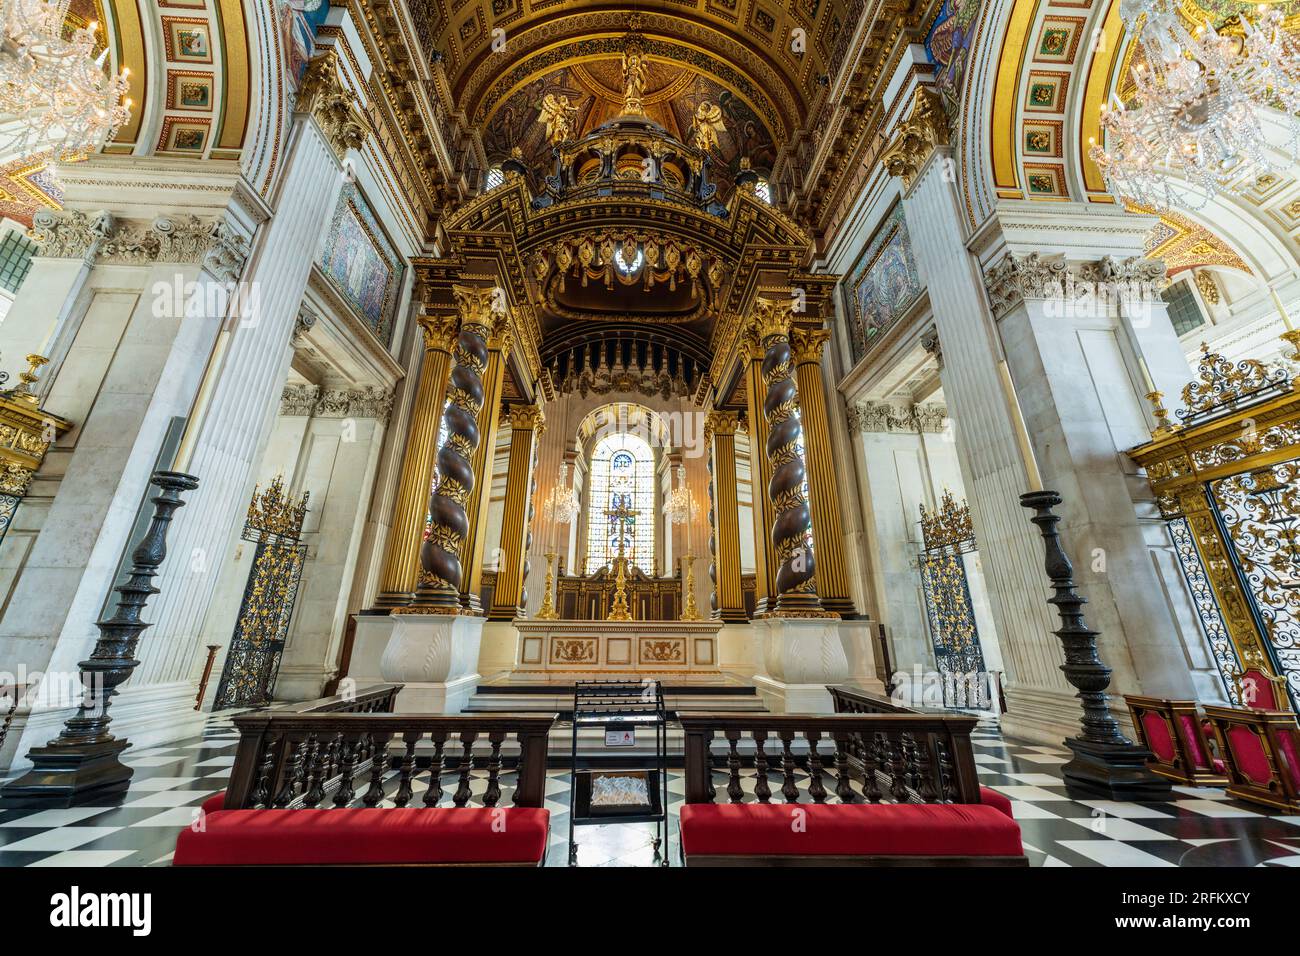 London, England, Großbritannien - 25. Juli 2022. Das Innere des Altars der St. Paul's Cathedral. Die St. Pauls Cathedral ist vor allem für ihre berühmte Kuppel und ihre historische Vergangenheit bekannt. Stockfoto